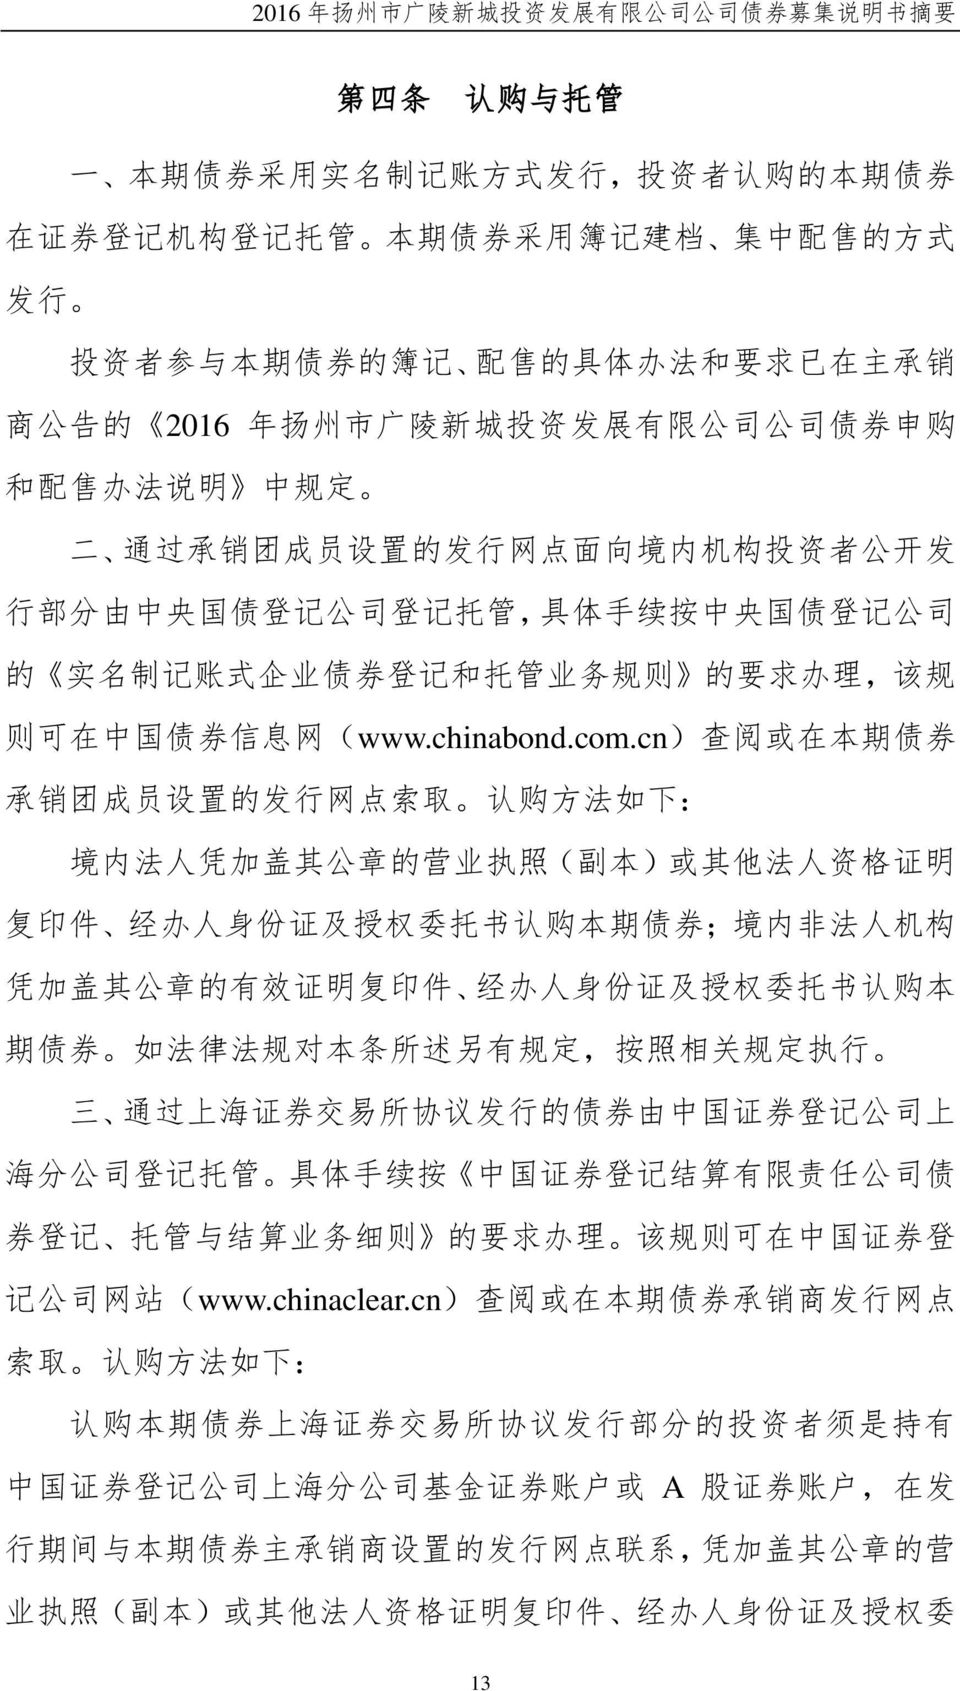 和 托 管 业 务 规 则 的 要 求 办 理, 该 规 则 可 在 中 国 债 券 信 息 网 (www.chinabond.com.